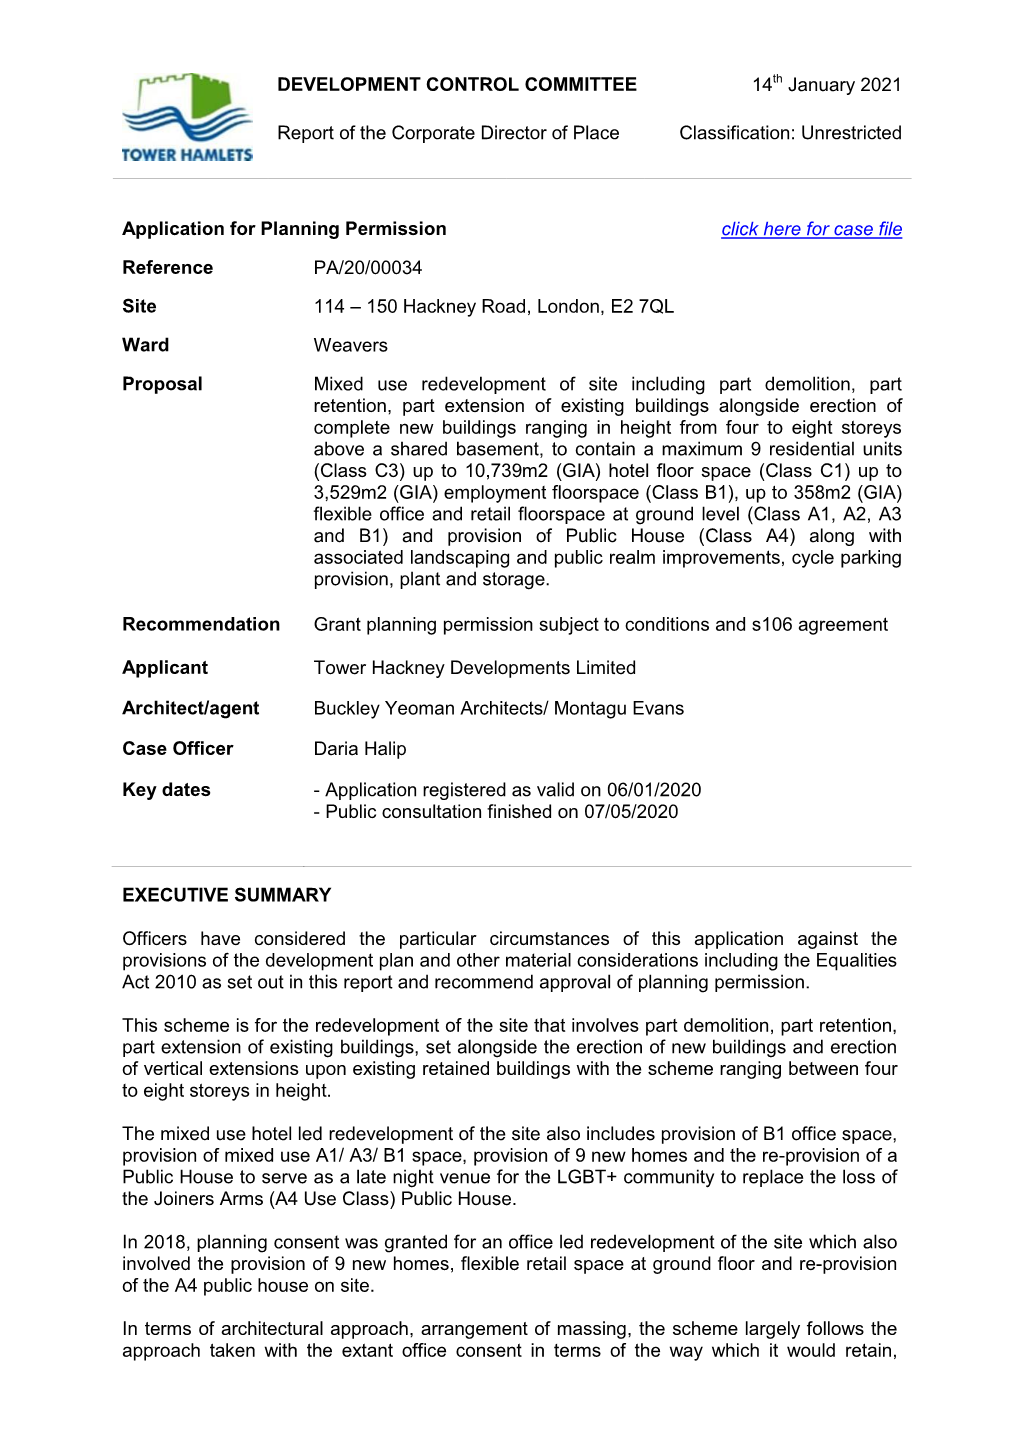 Hackney Road Report 14012021 Development Committee.Pdf